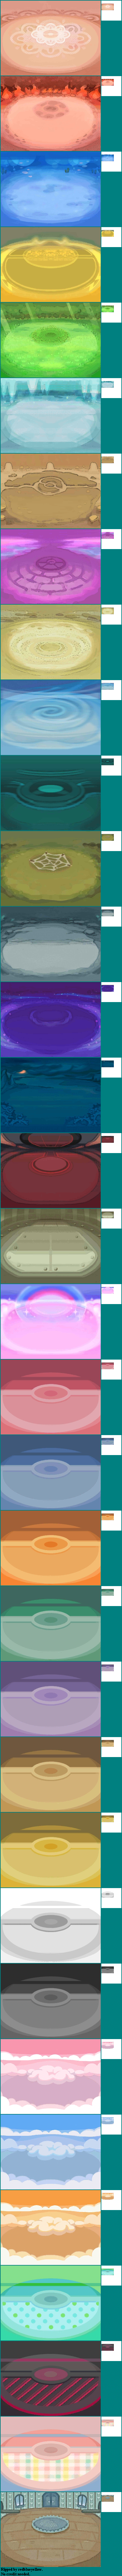 Pokémon X / Y - Backgrounds